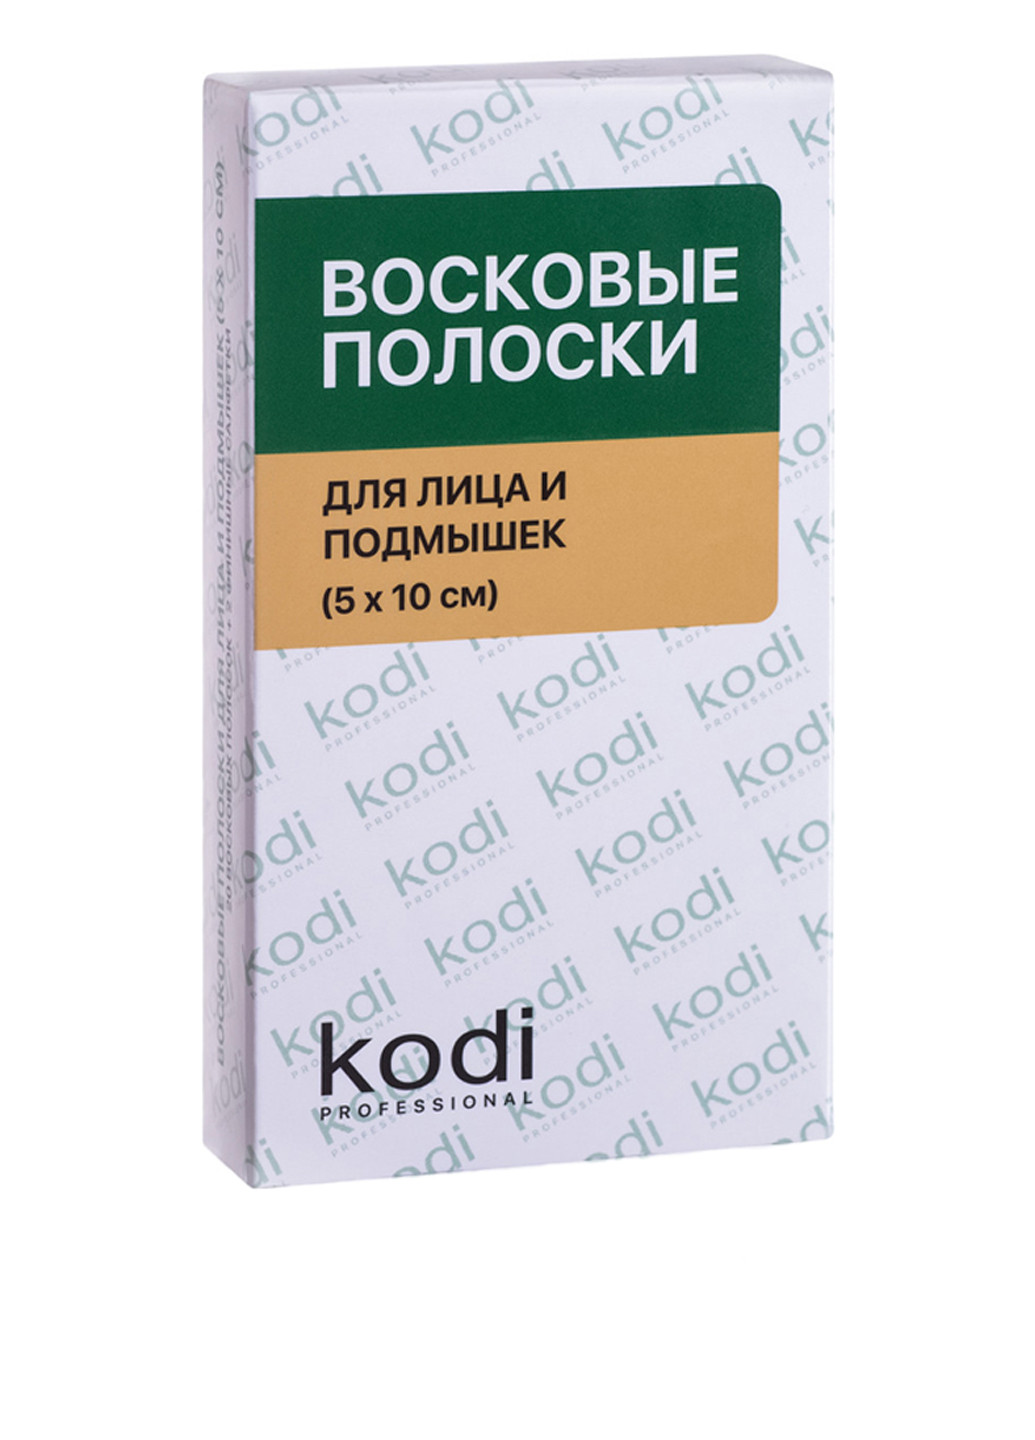 Восковые полоски для лица и области подмышек (10 шт.) Kodi Professional (79994416)